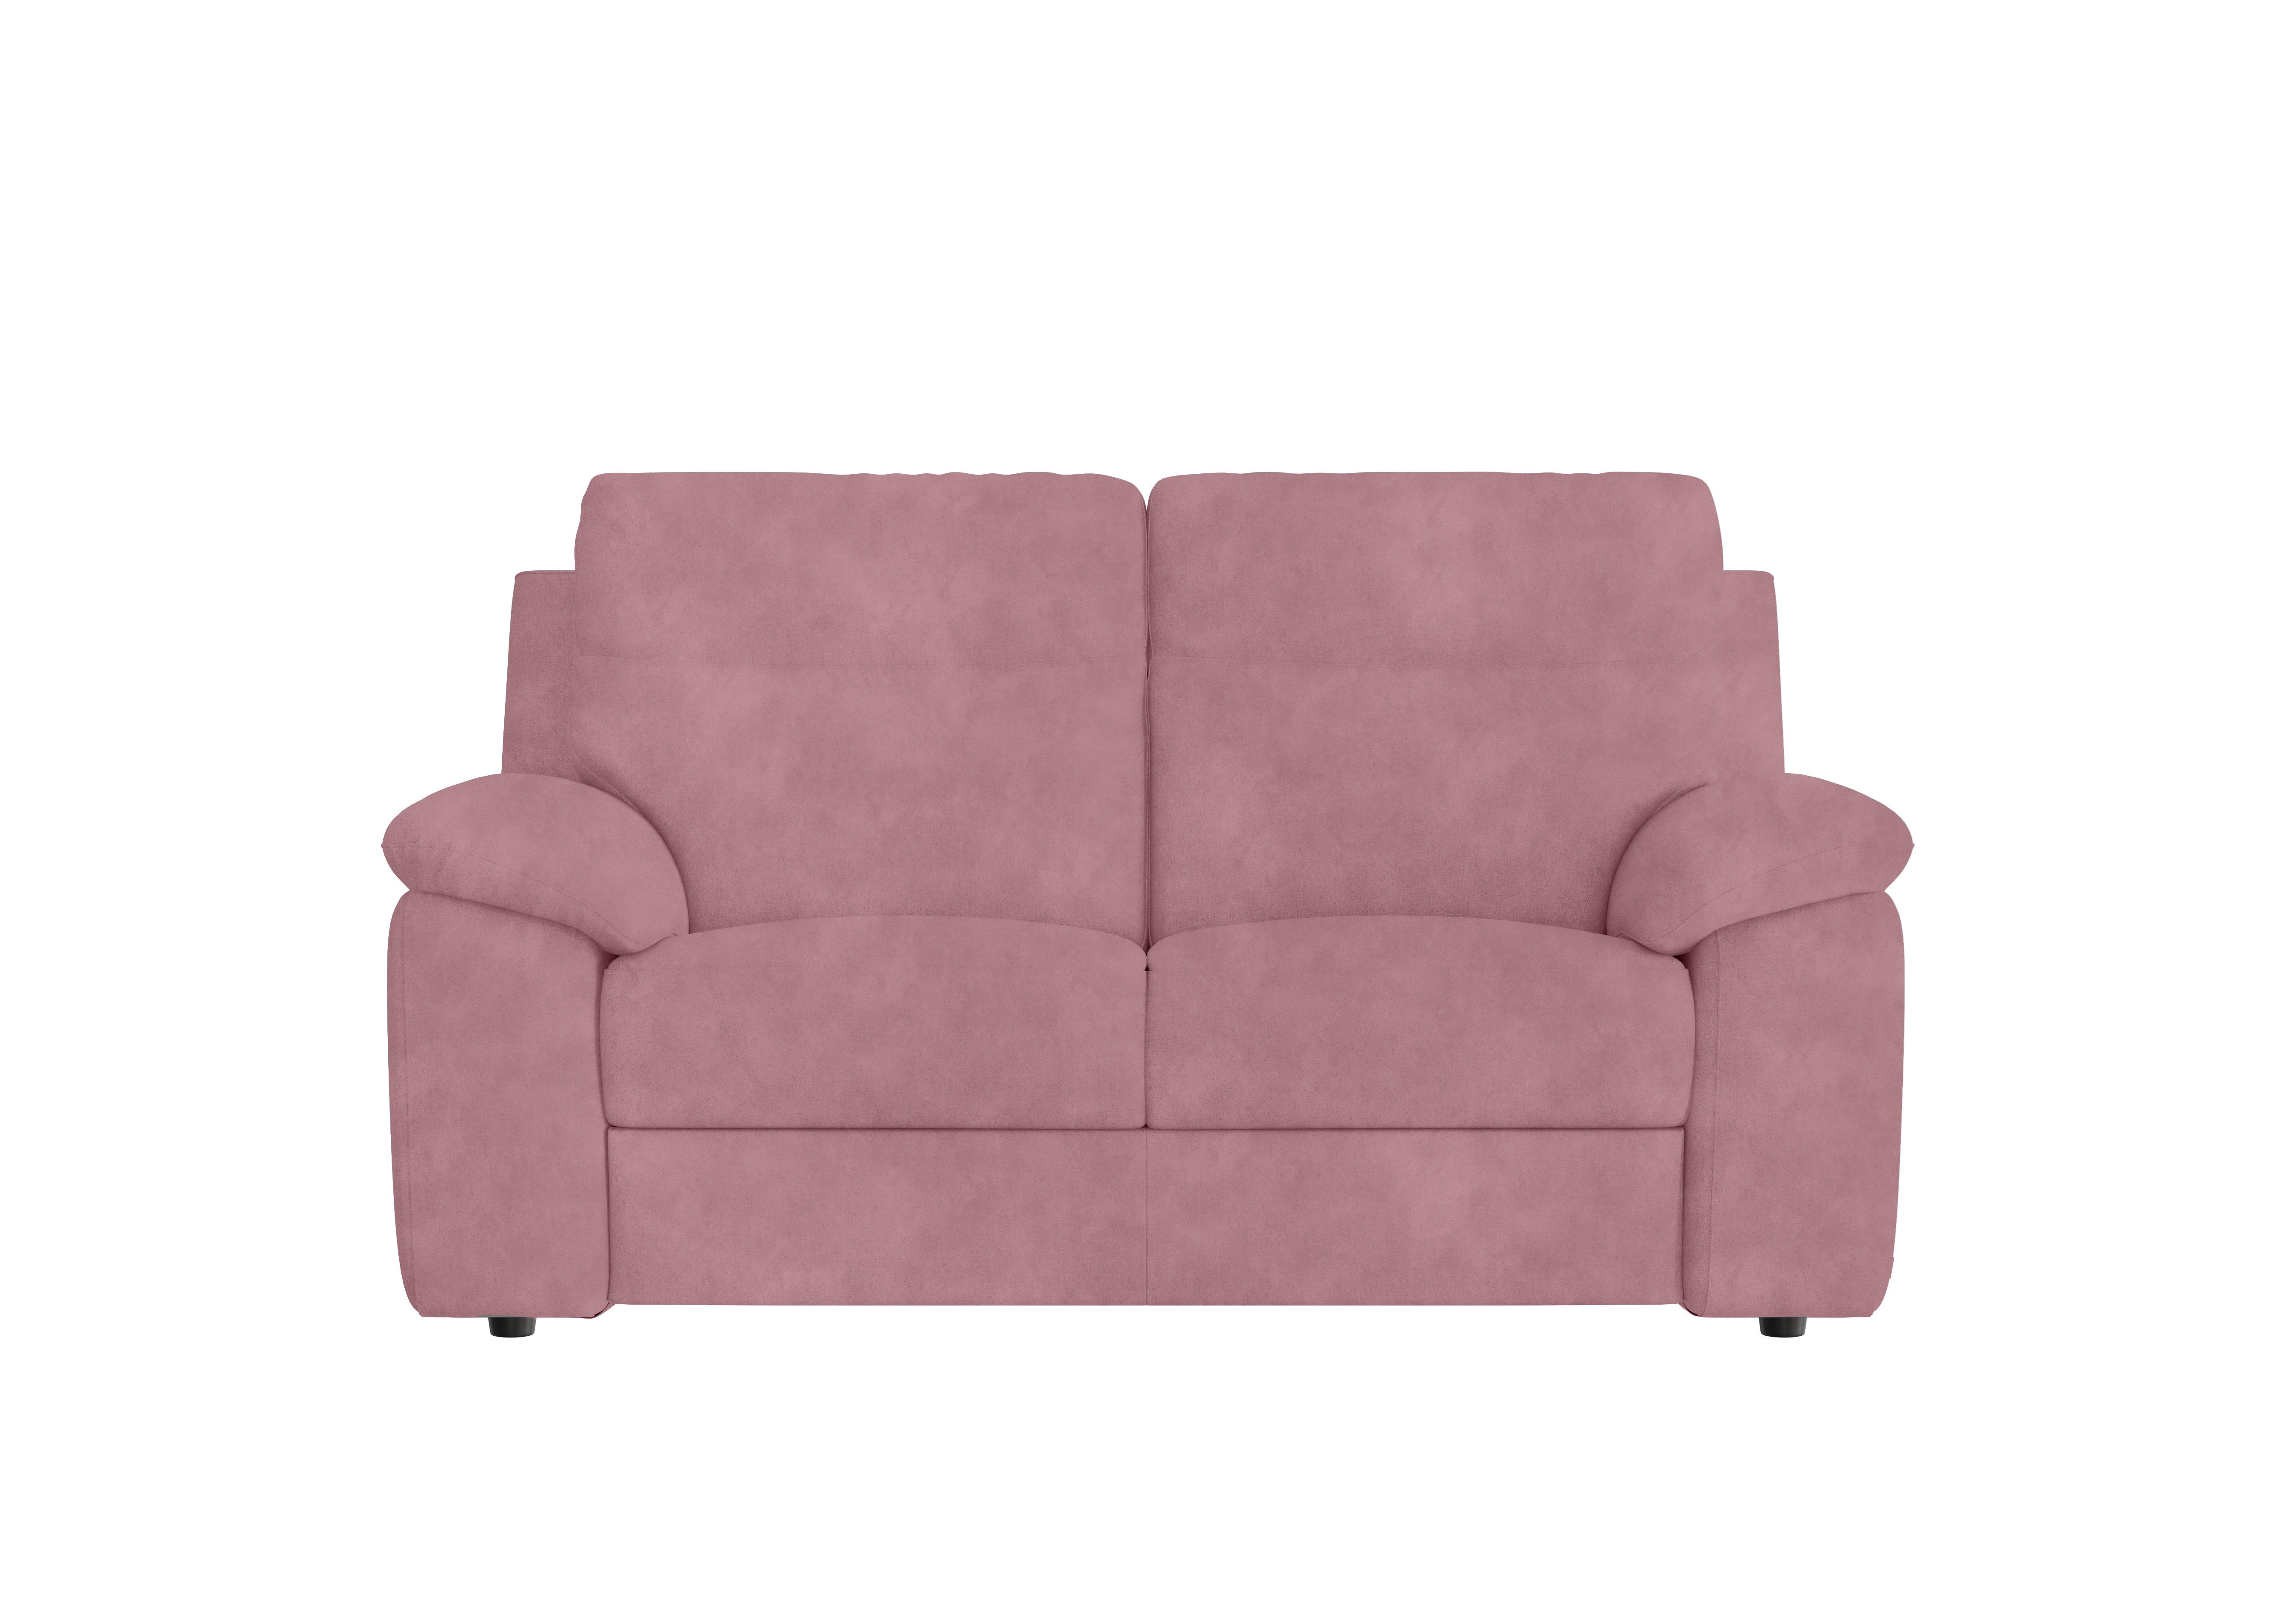 Pepino 2 Seater Fabric Sofa in Selma Rosa on Furniture Village